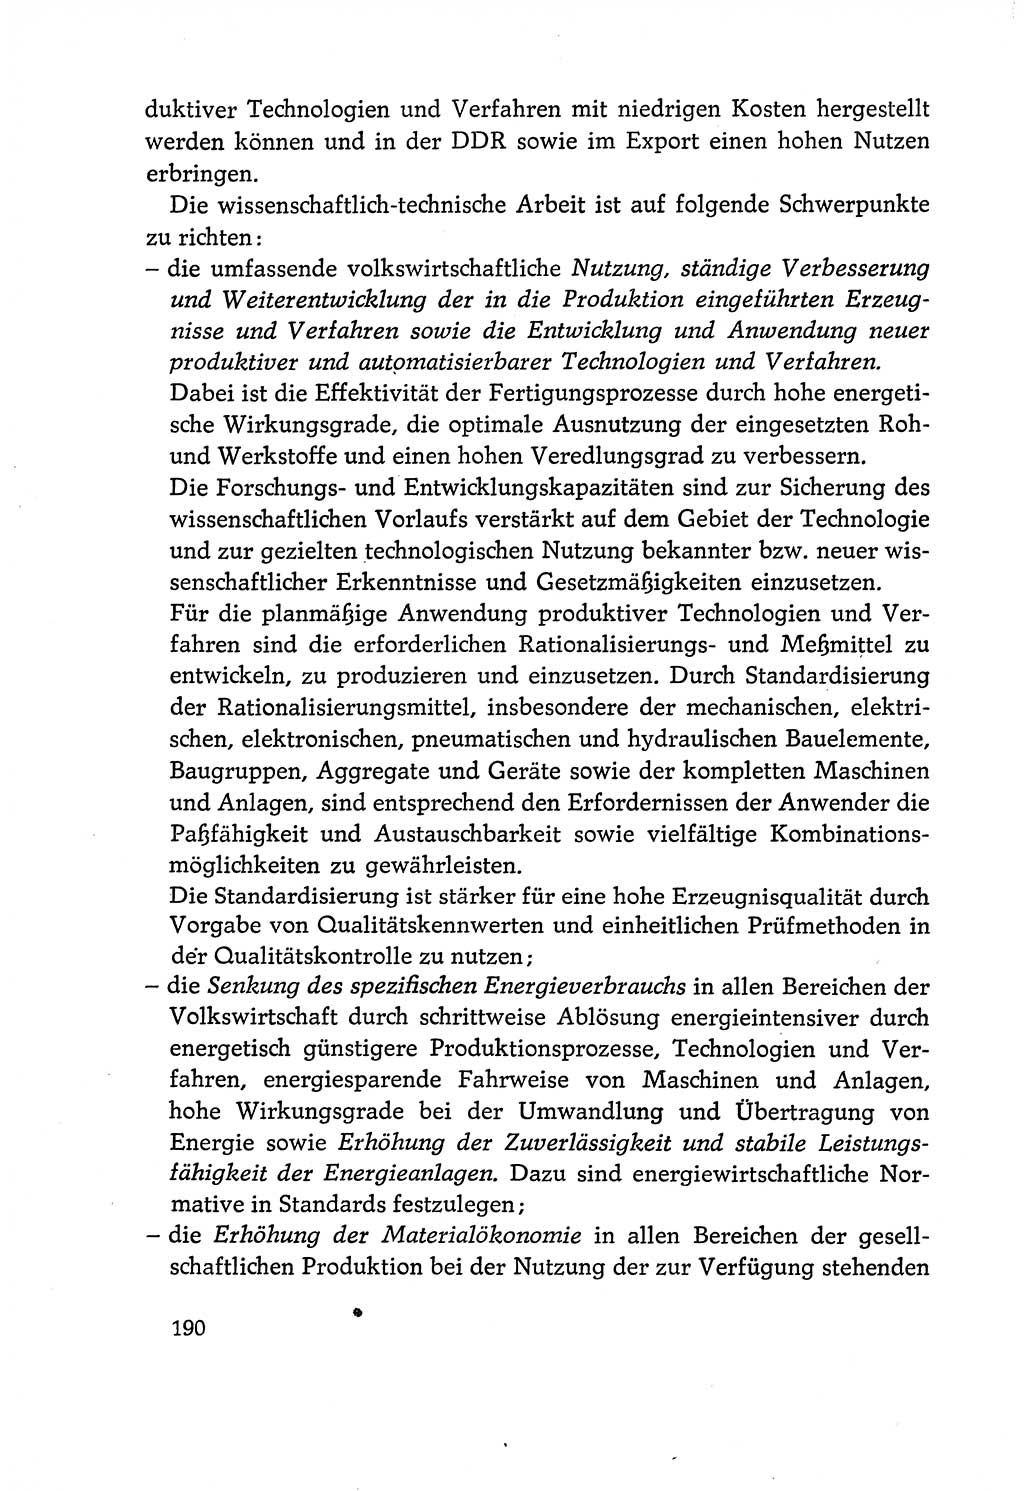 Dokumente der Sozialistischen Einheitspartei Deutschlands (SED) [Deutsche Demokratische Republik (DDR)] 1970-1971, Seite 190 (Dok. SED DDR 1970-1971, S. 190)